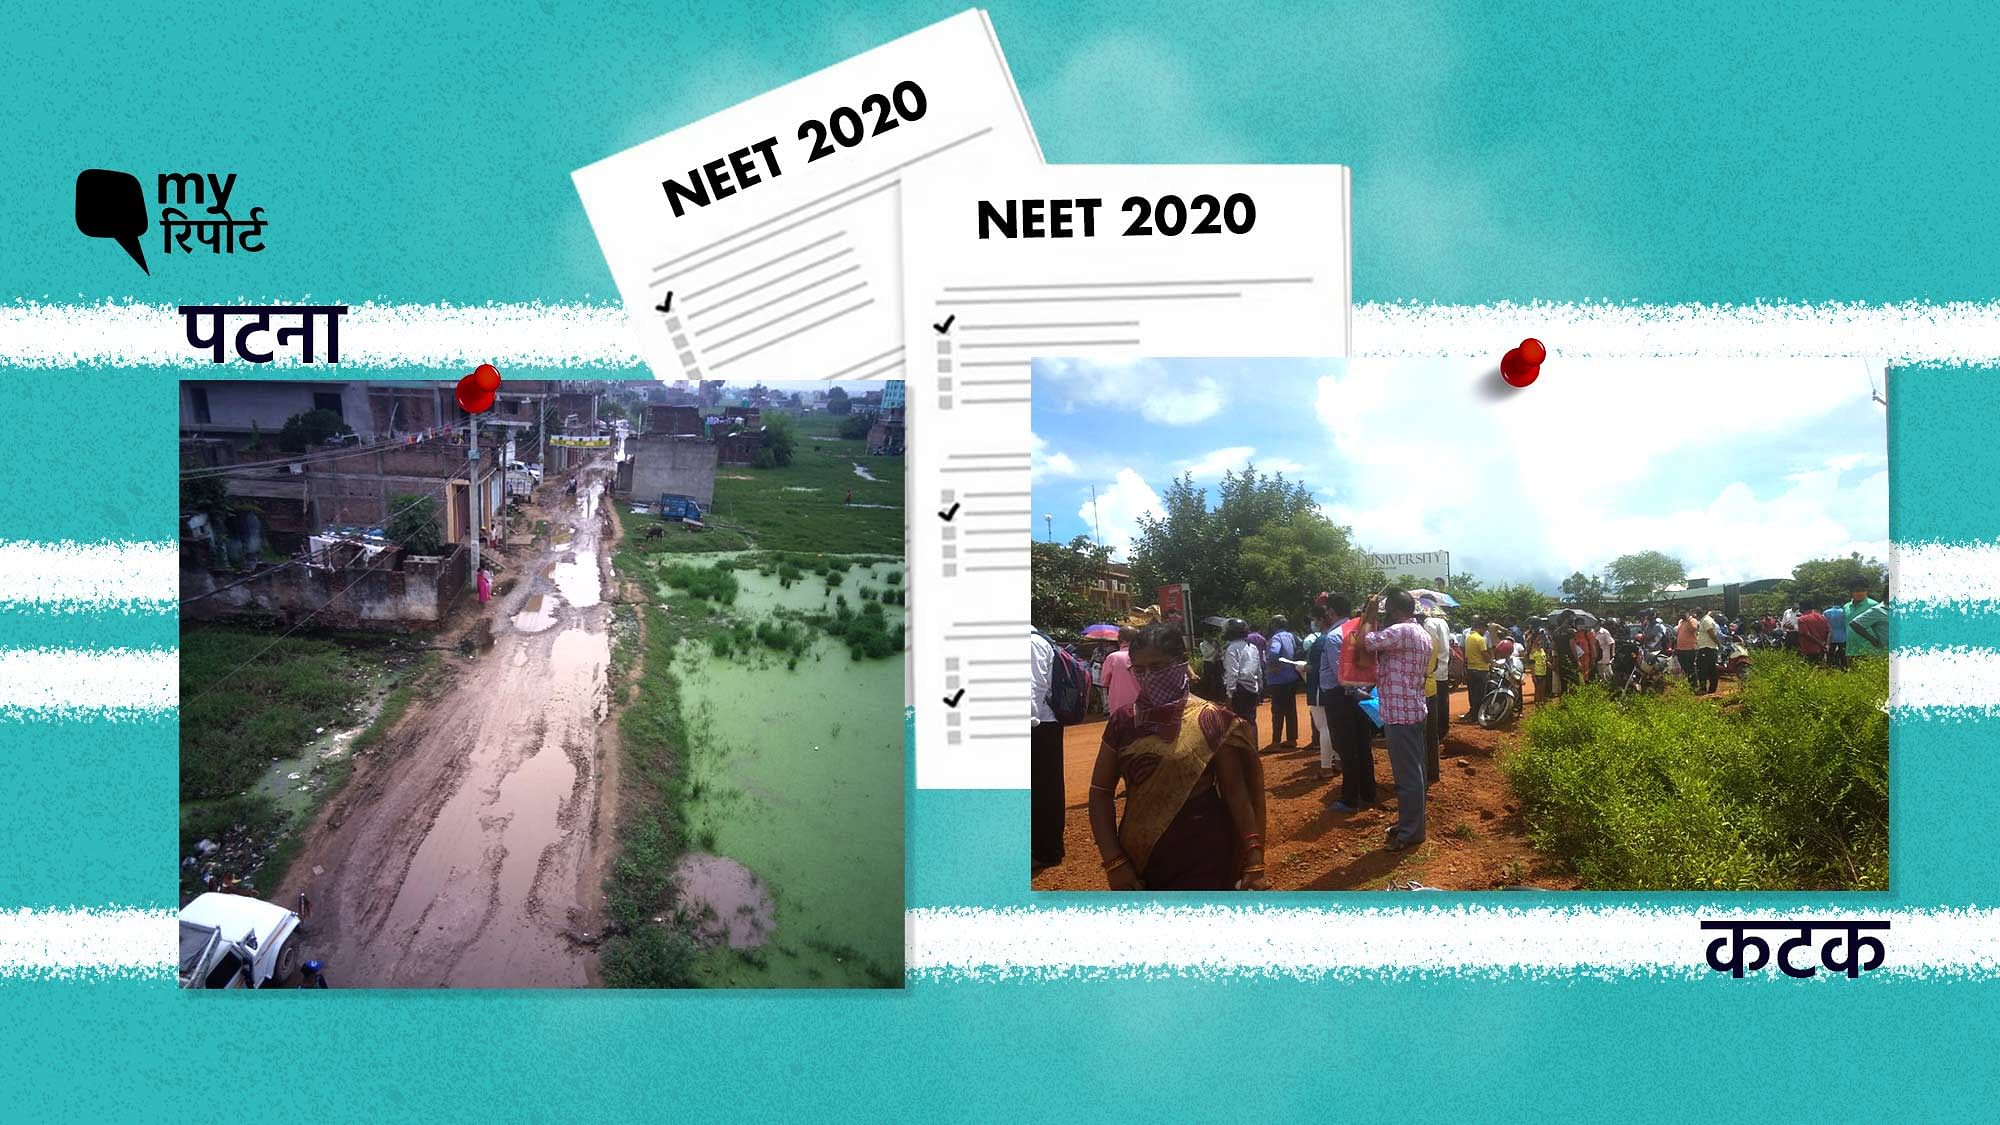 NEET 2020 के एग्जाम सेंटर्स में प्रवेश के लिए अलग-अलग एंट्री की व्यवस्था थी लेकिन निकलने के लिए नहीं